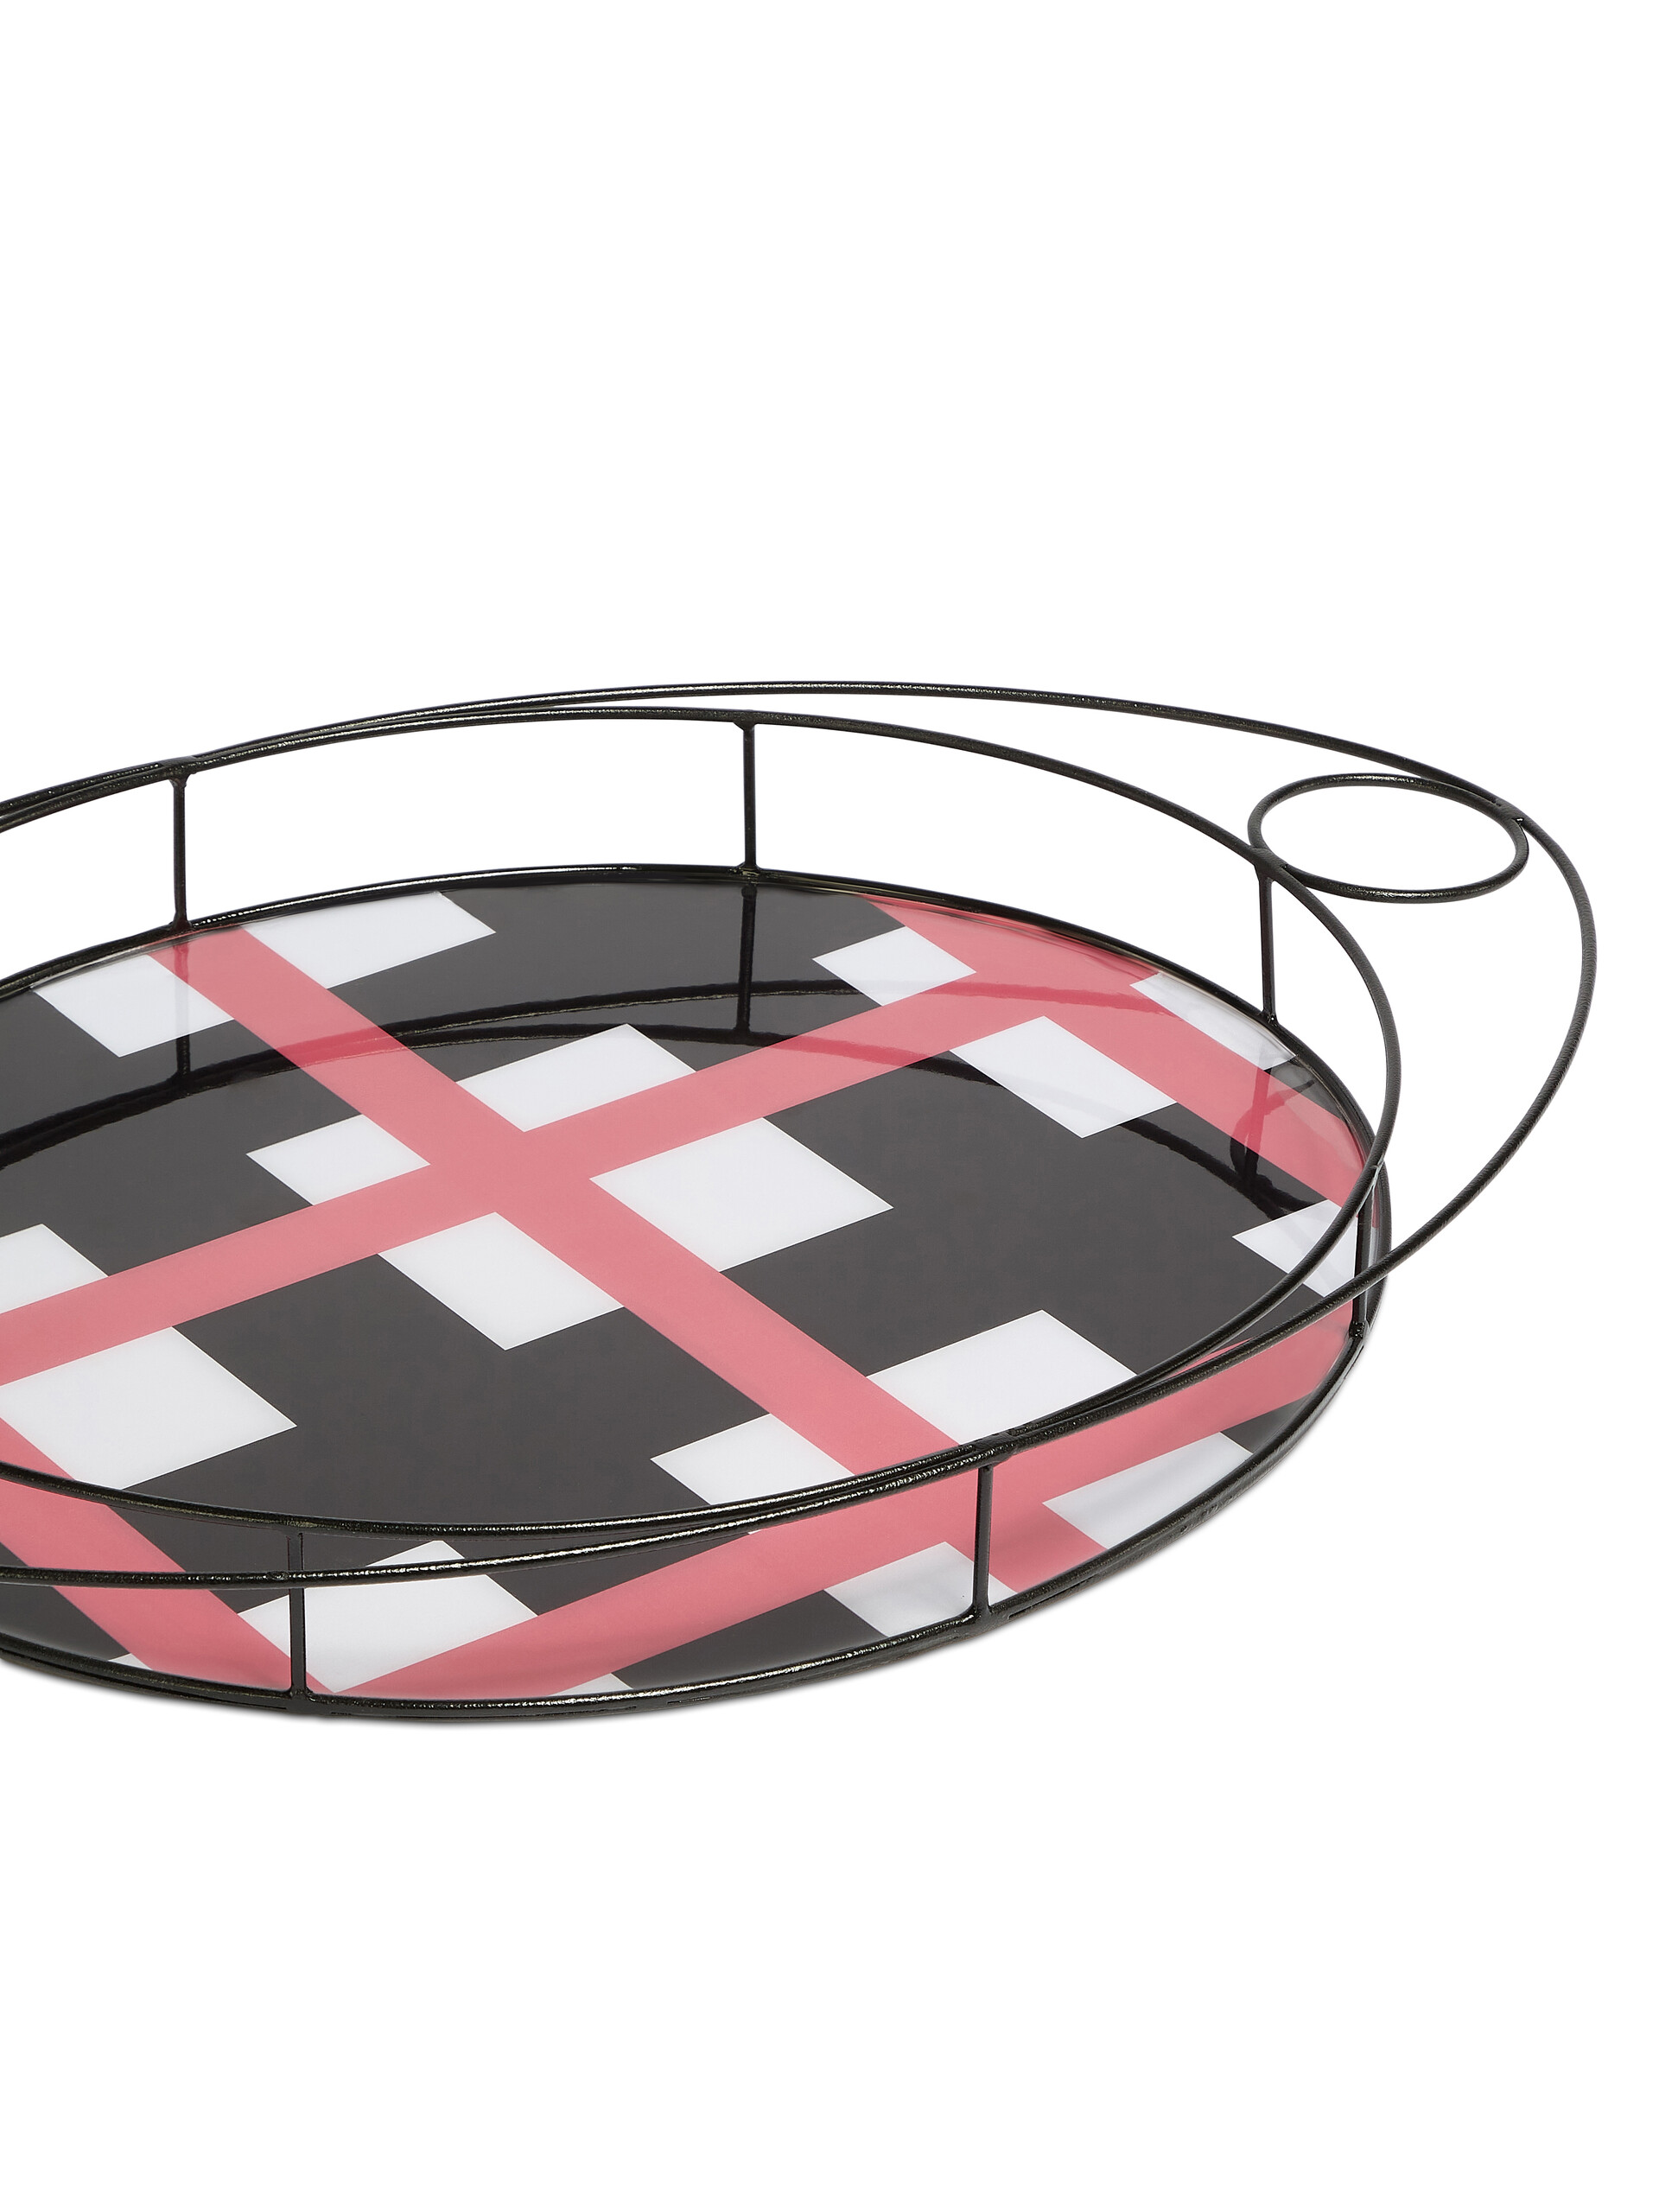 Vassoio ovale MARNI MARKET in ferro resina - Home Accessories - Image 3